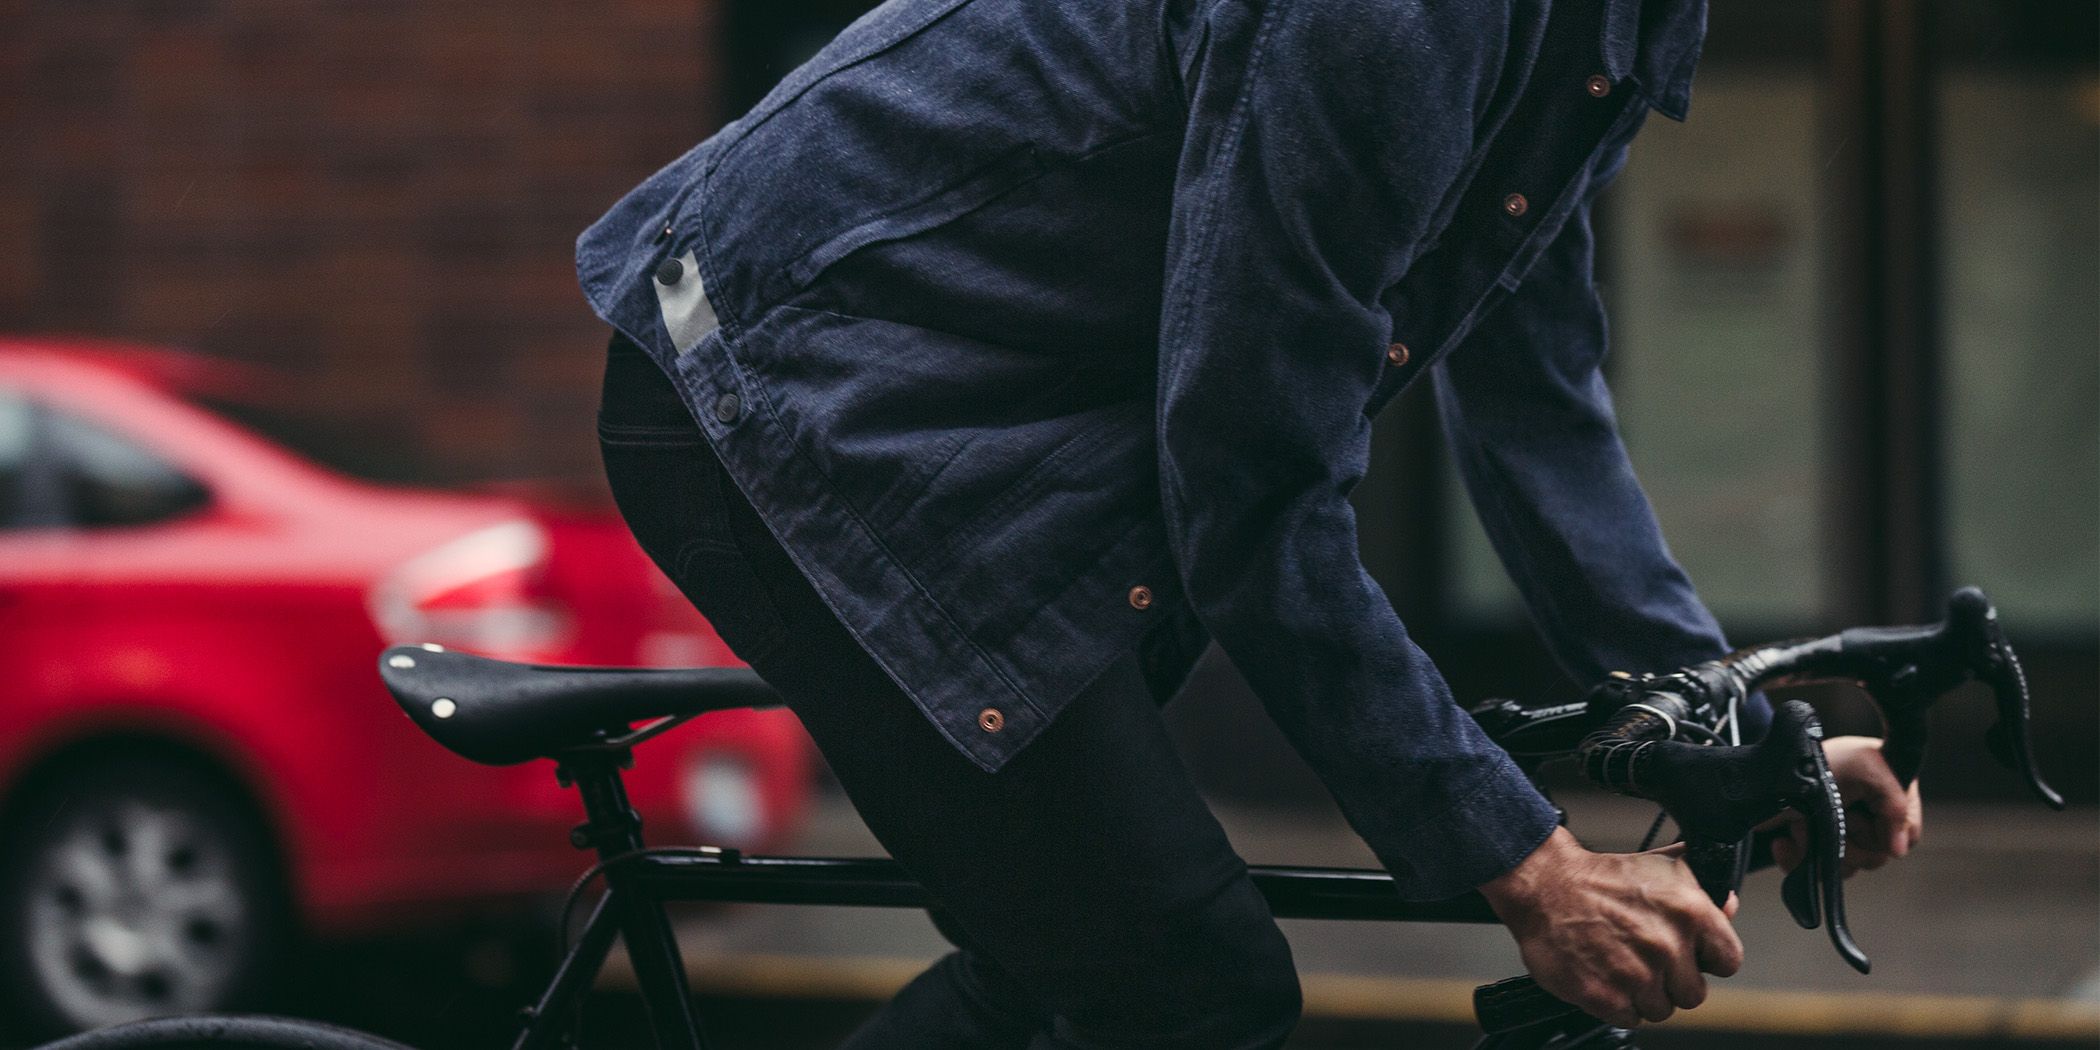 levis commuter jeans waterproof